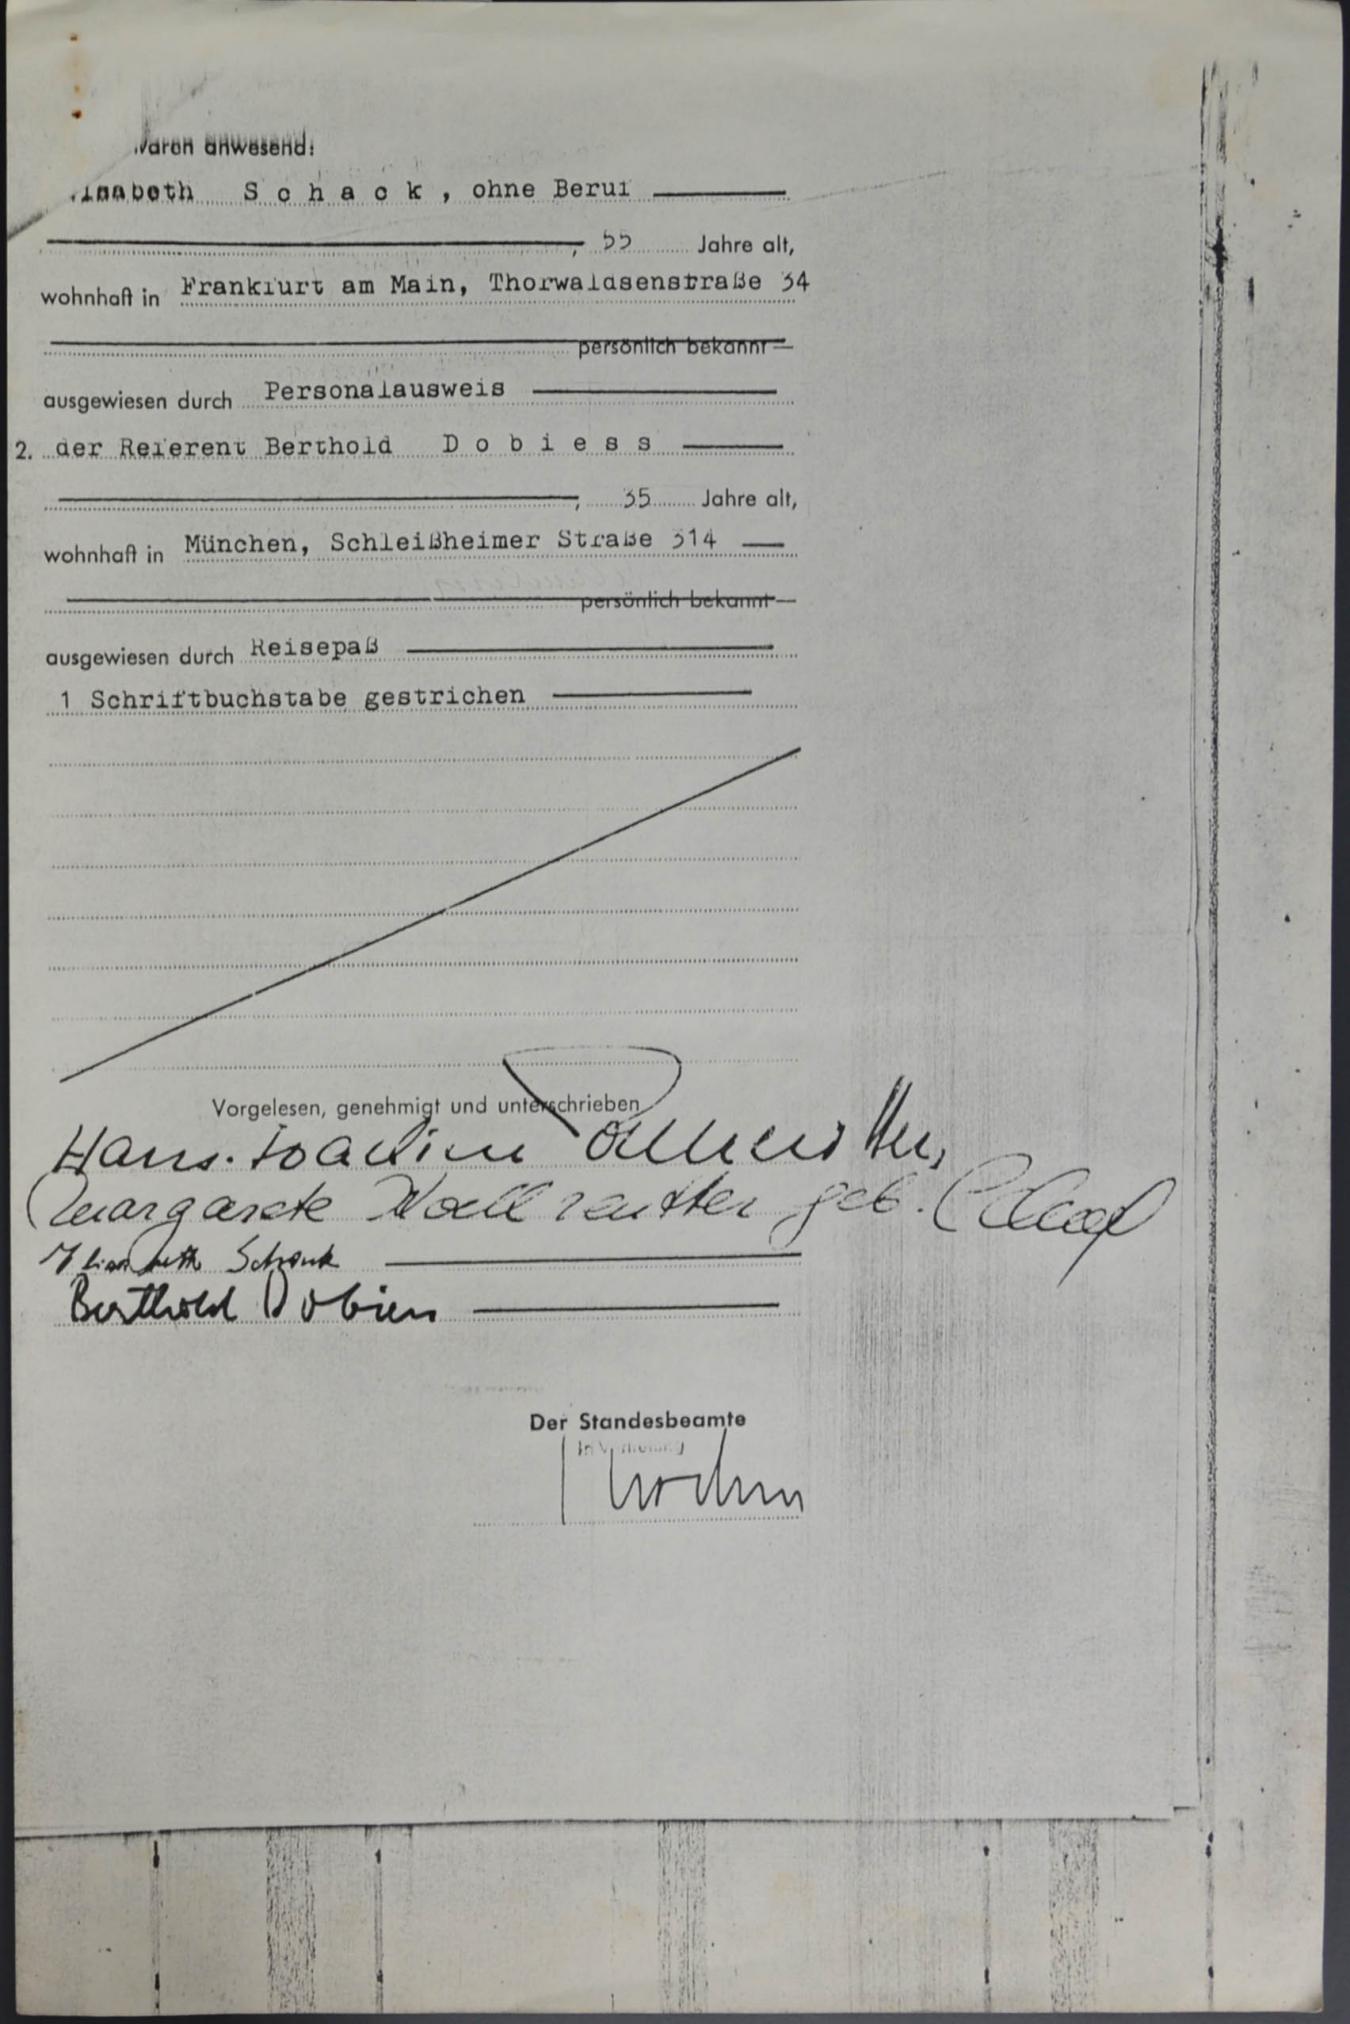 Certidão de casamento de Koellreutter e Margarita Schack 1966